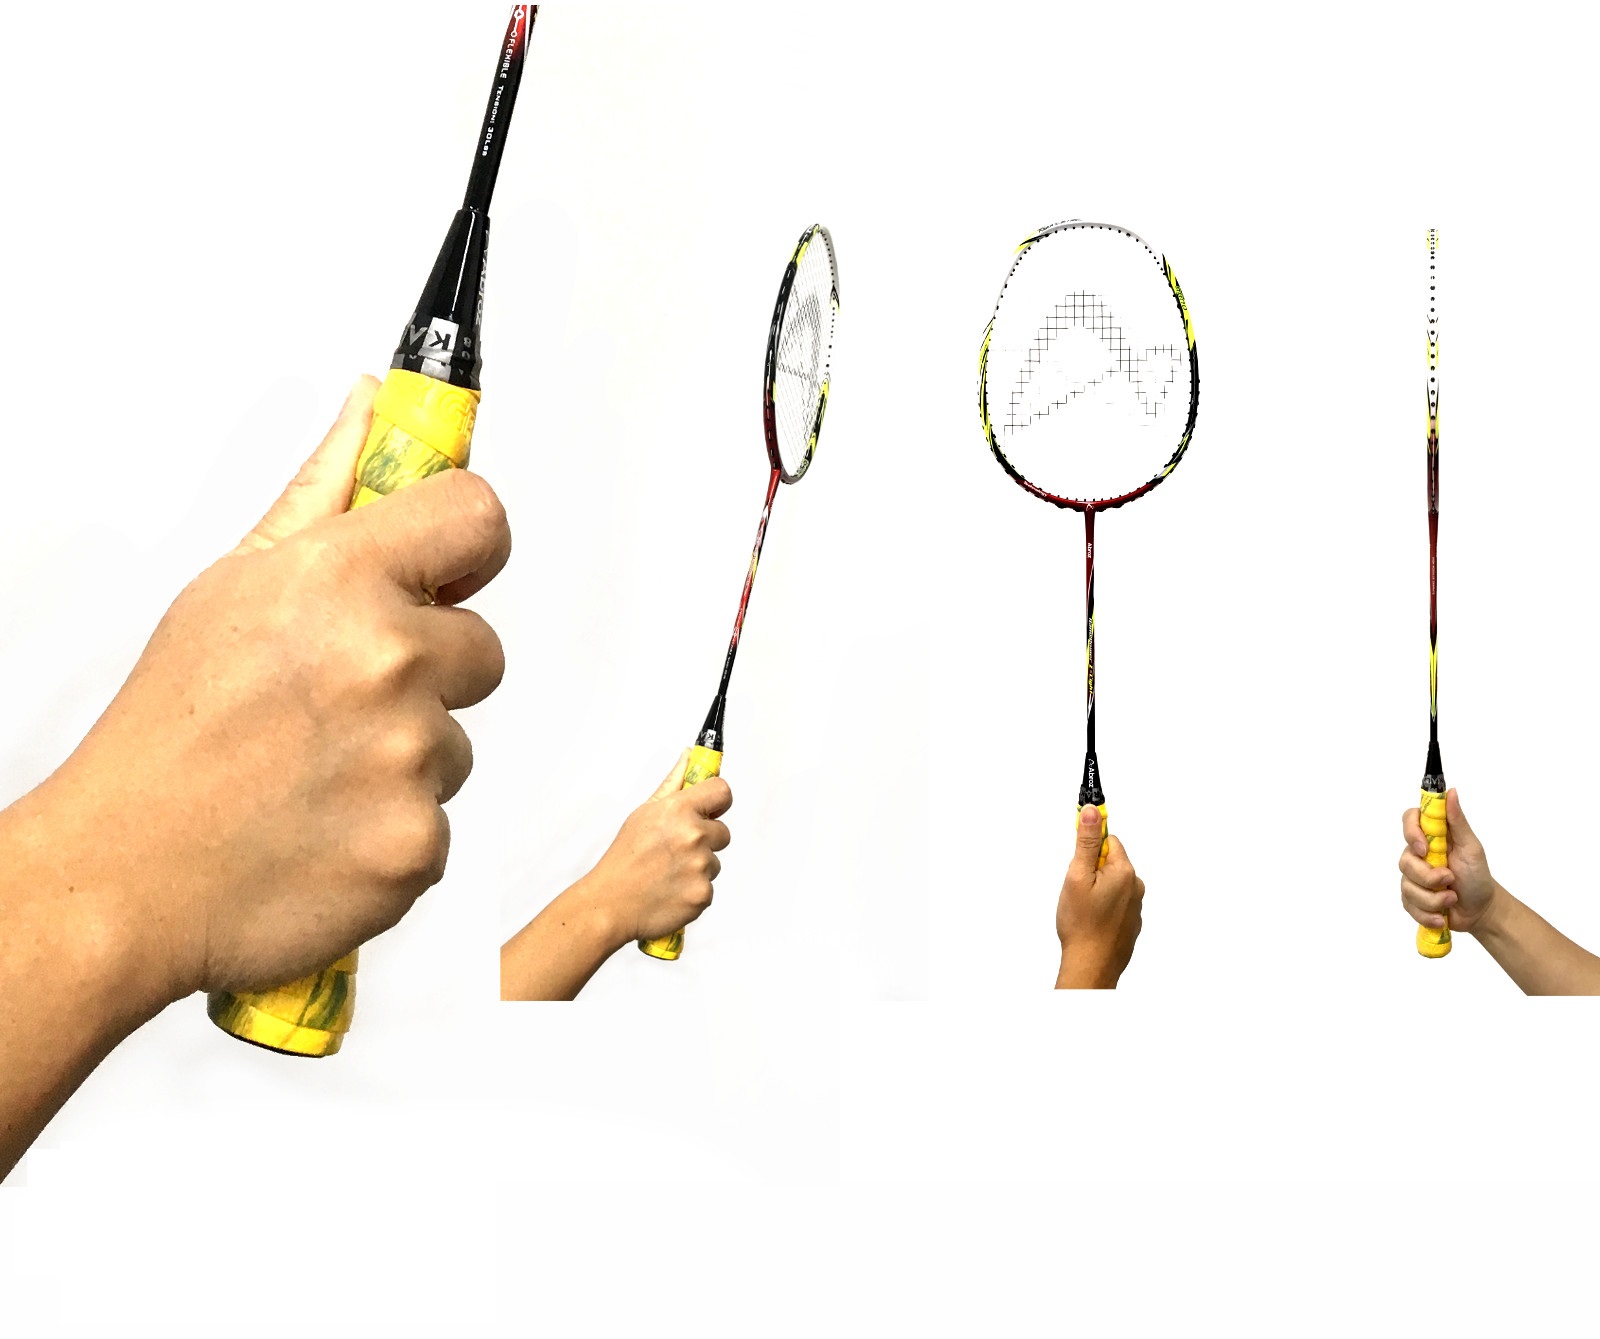 Cách cầm vợt backhand thumb grip thường sử dụng để phát cầu